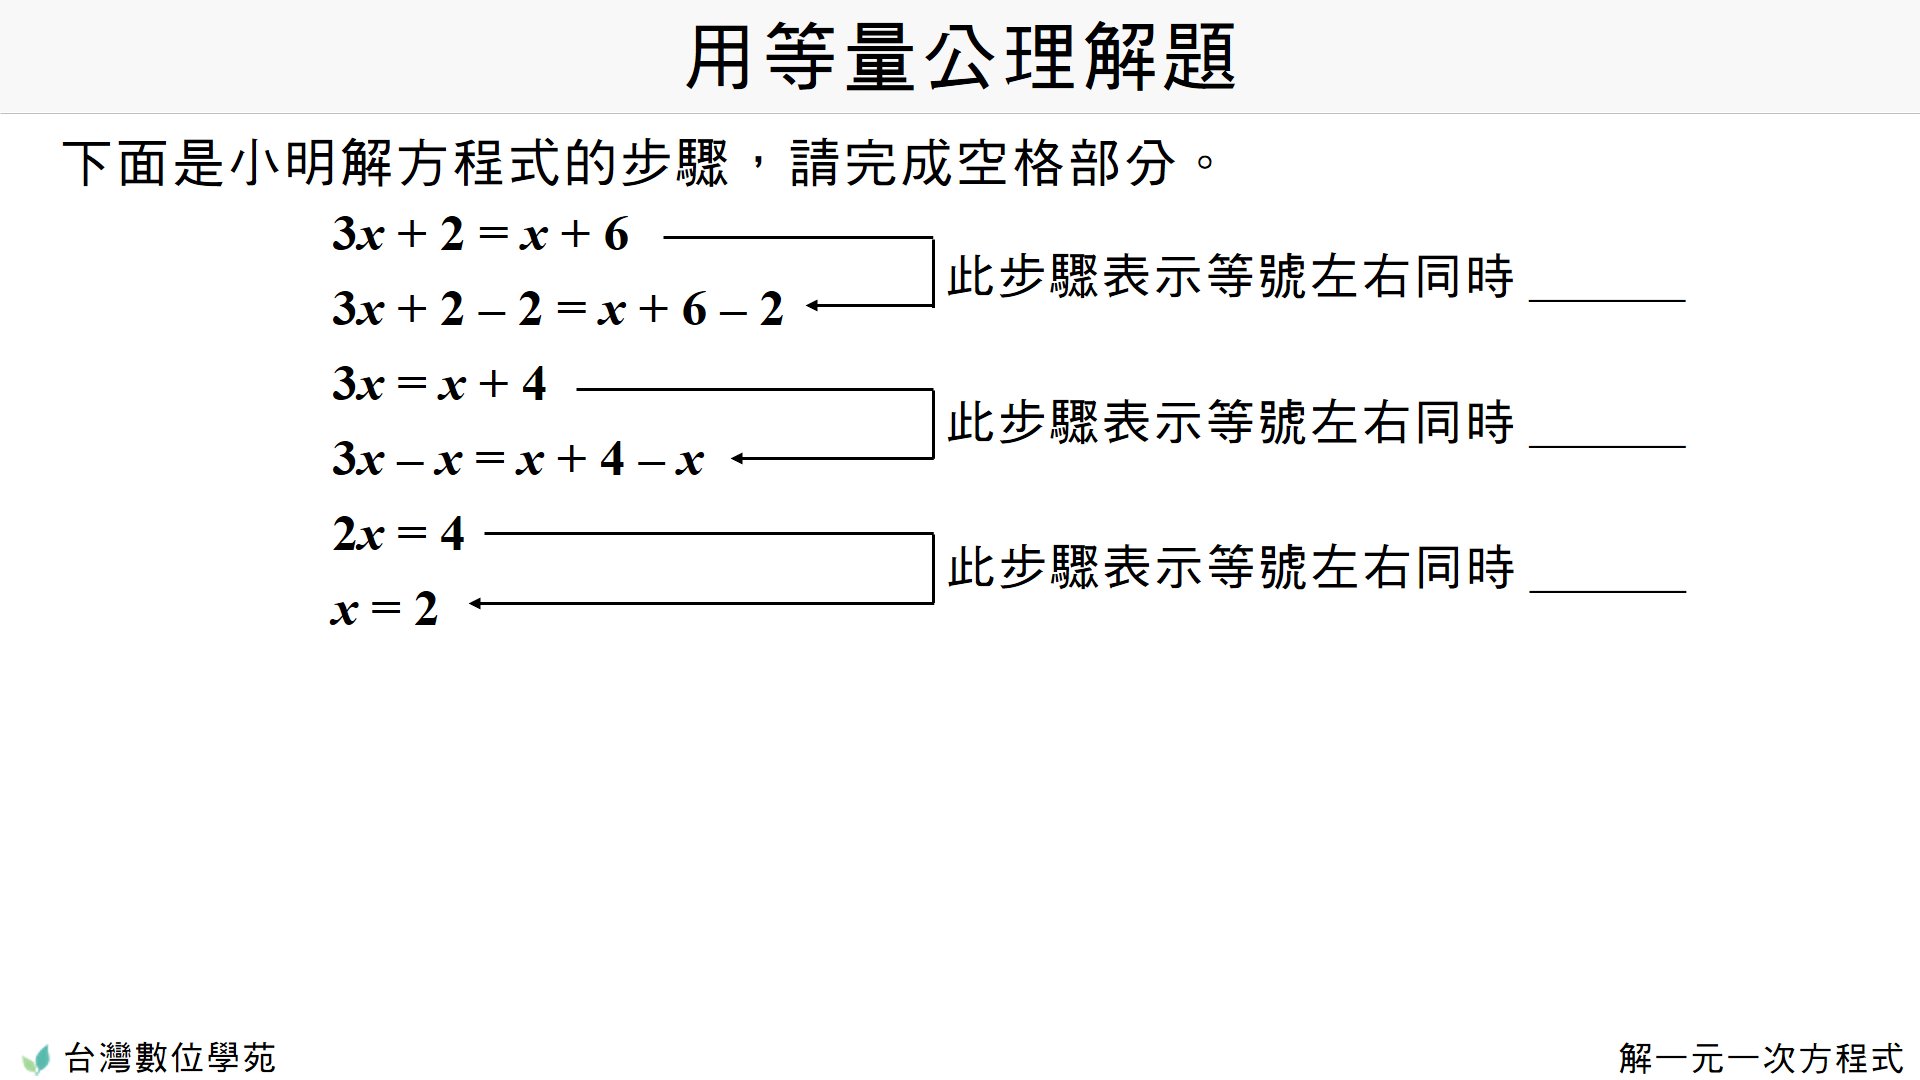 例 解一元一次方程式 台灣數位學苑 K12 數學